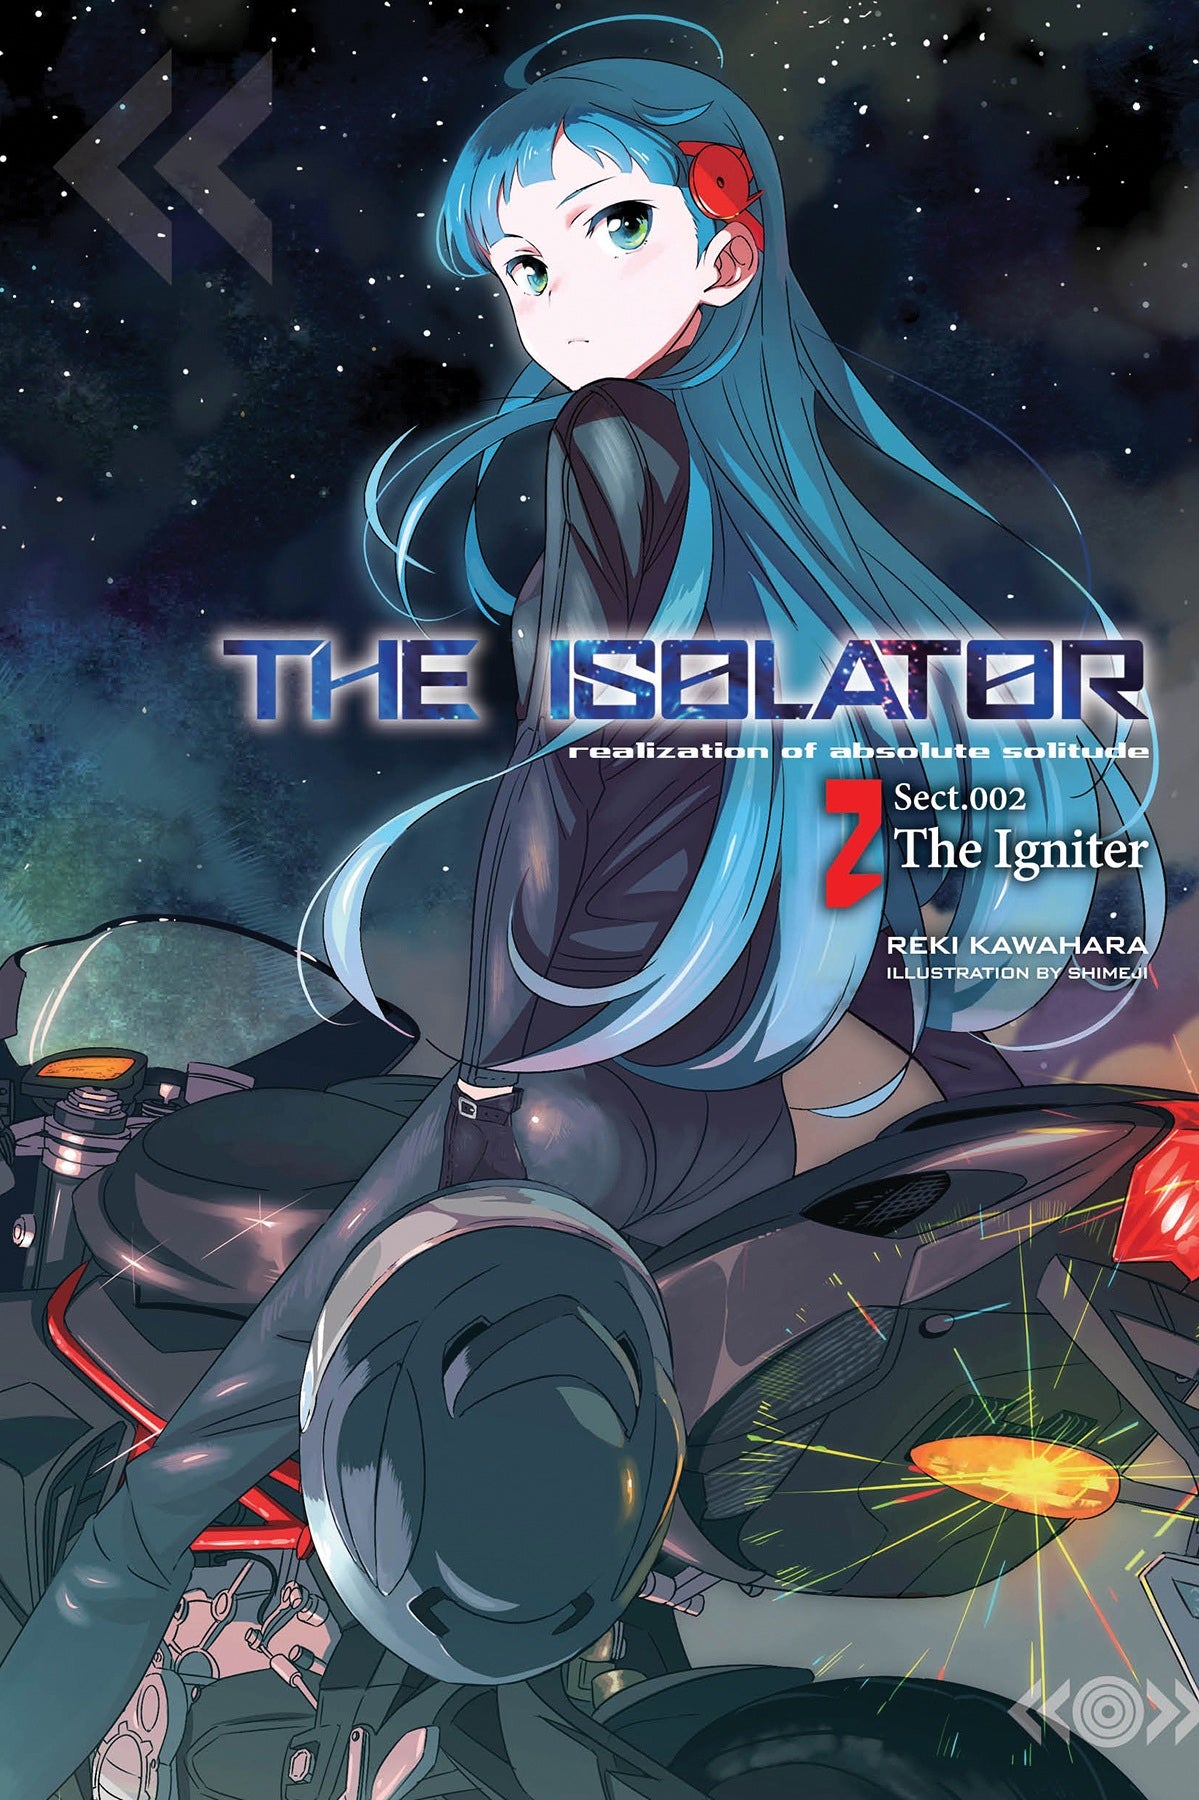 The Isolator Vol. 02 (Light Novel): The Igniter